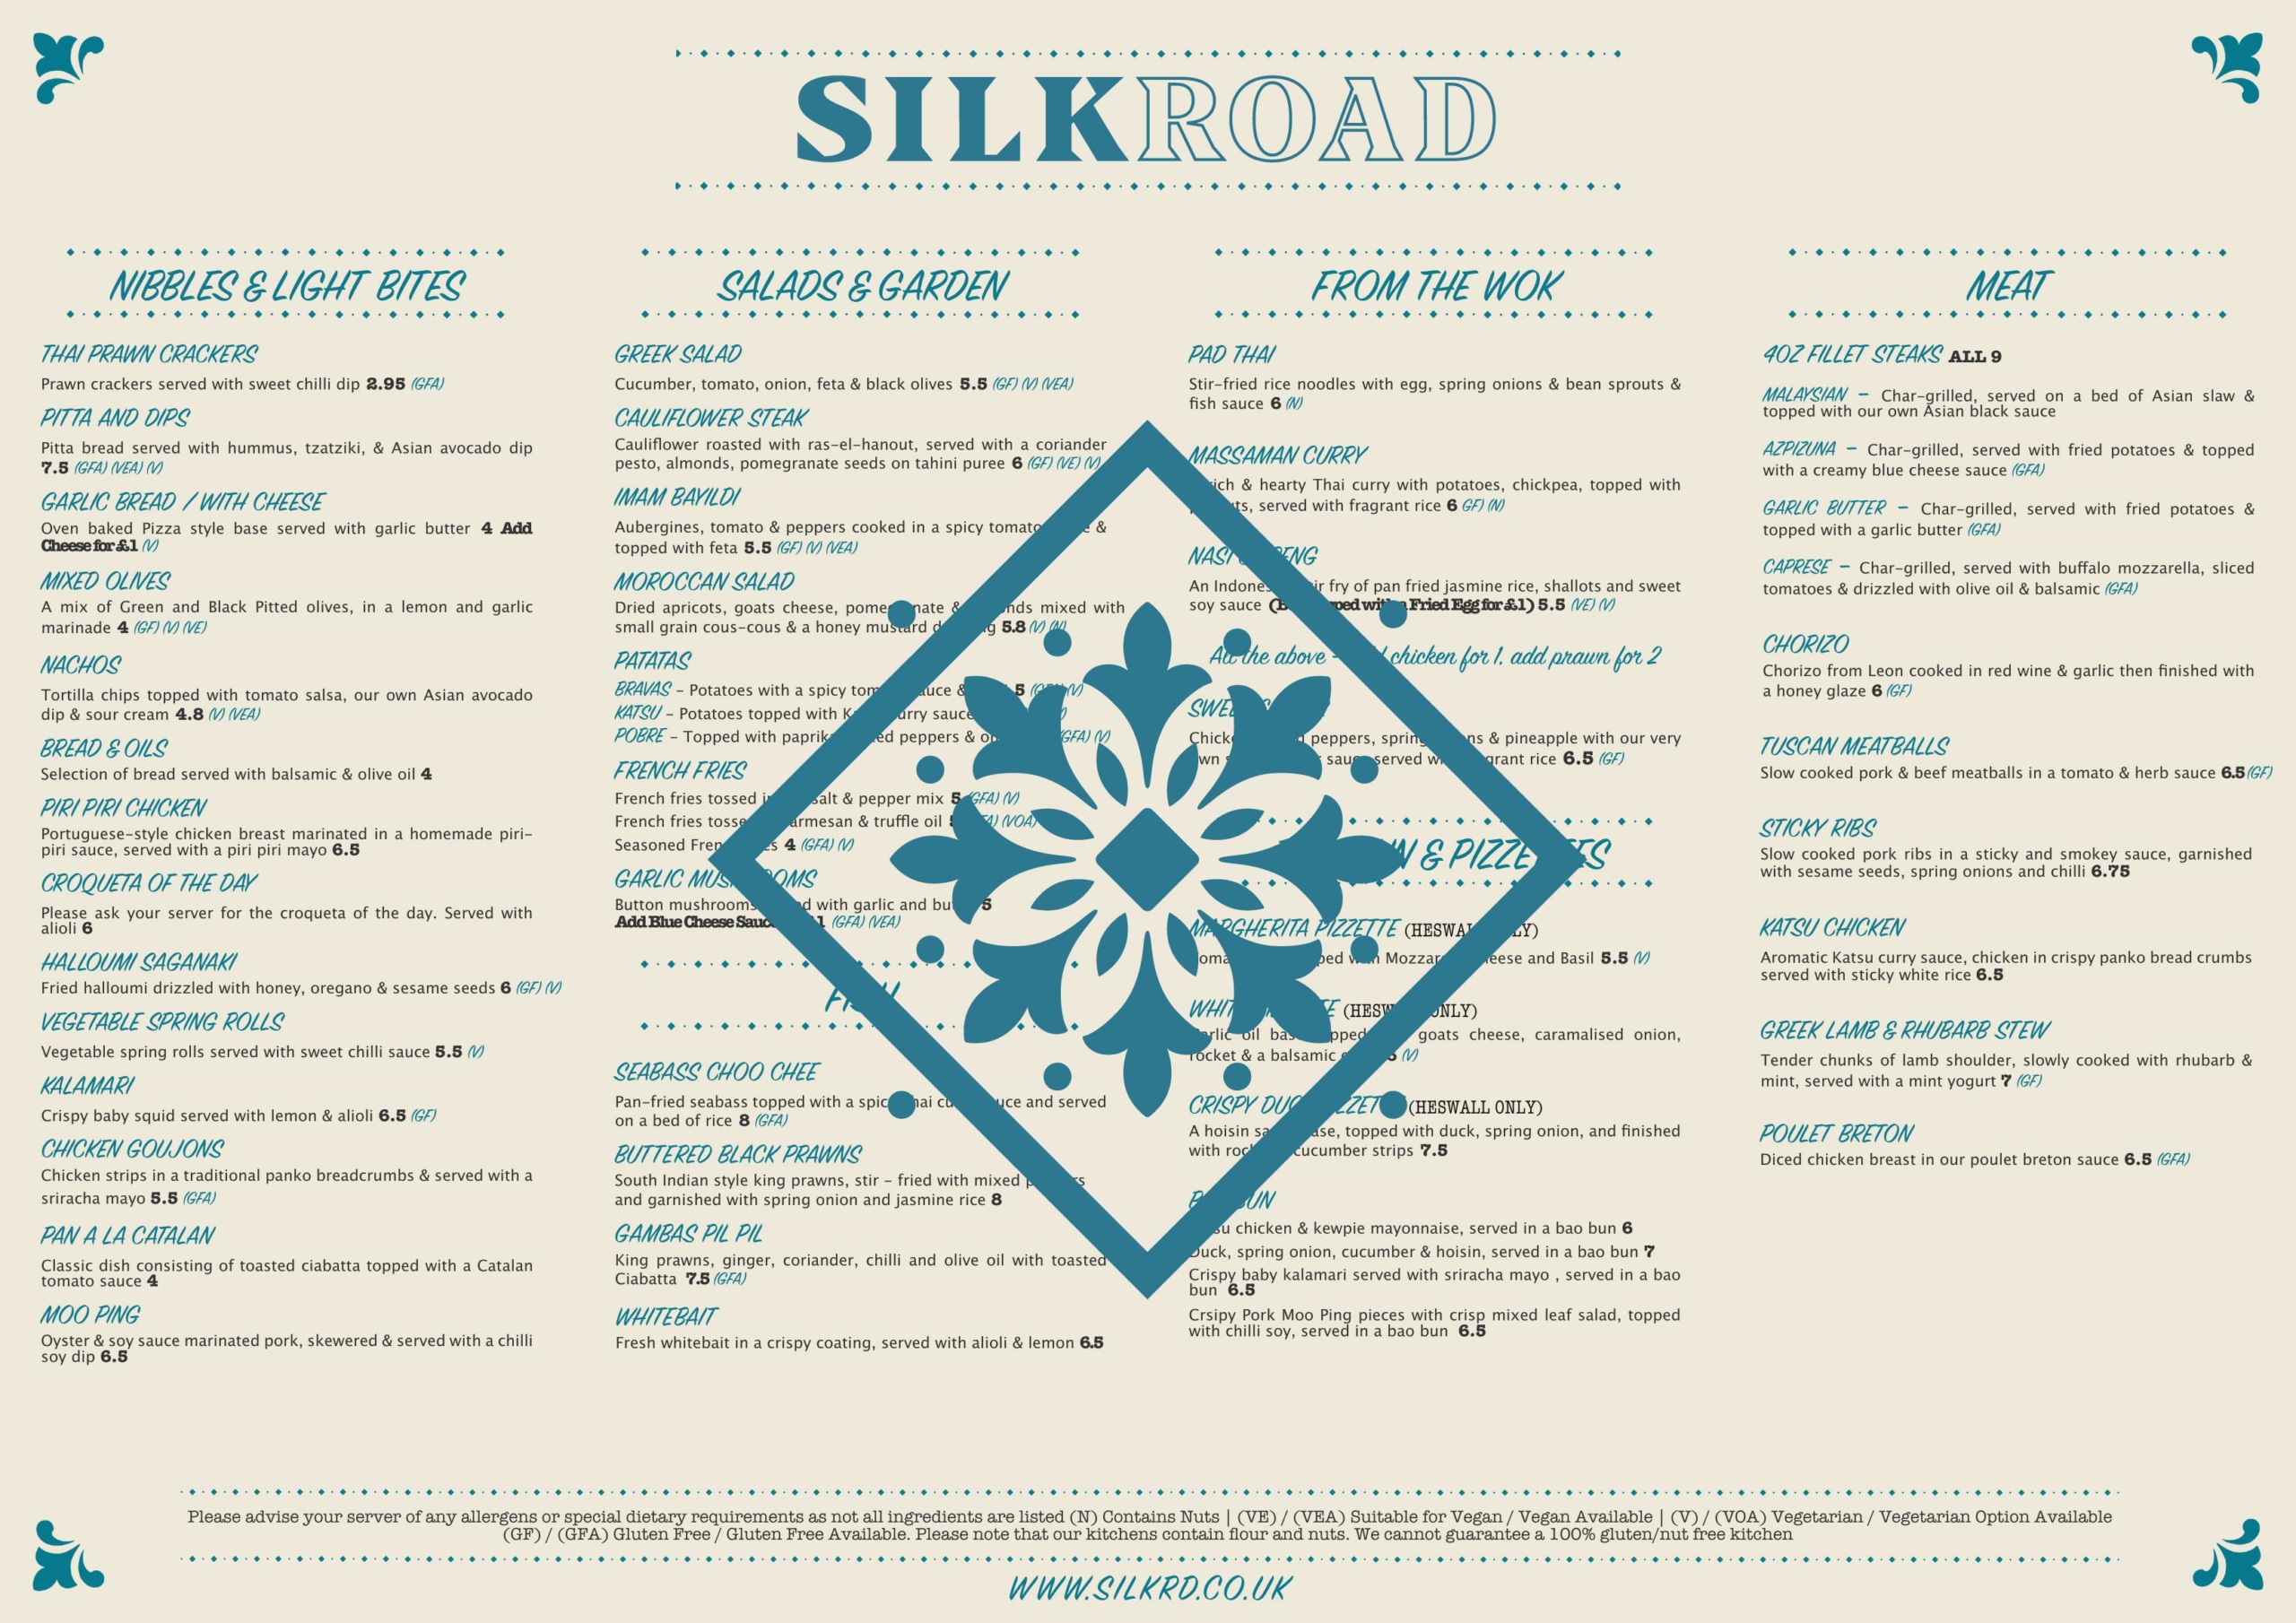 Silk Rd Tapas restaurant Wirral - main menu